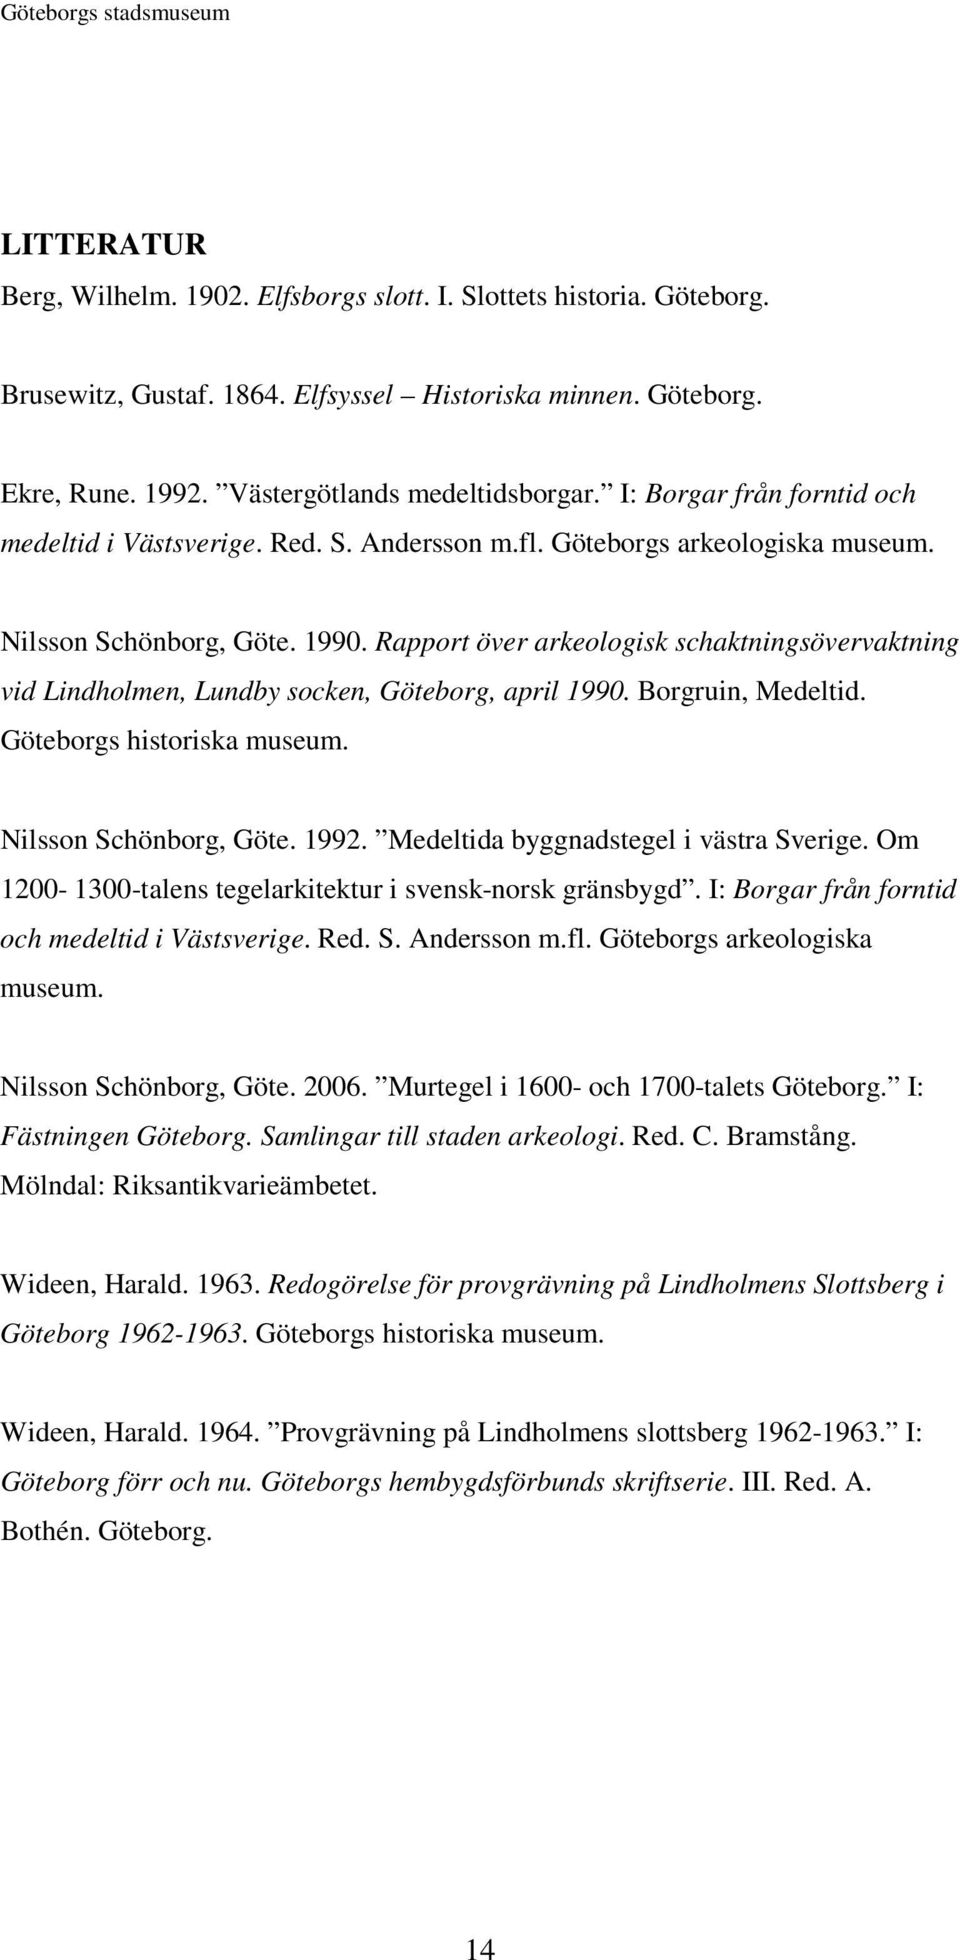 Rapport över arkeologisk schaktningsövervaktning vid Lindholmen, Lundby socken, Göteborg, april 1990. Borgruin, Medeltid. Göteborgs historiska museum. Nilsson Schönborg, Göte. 1992.